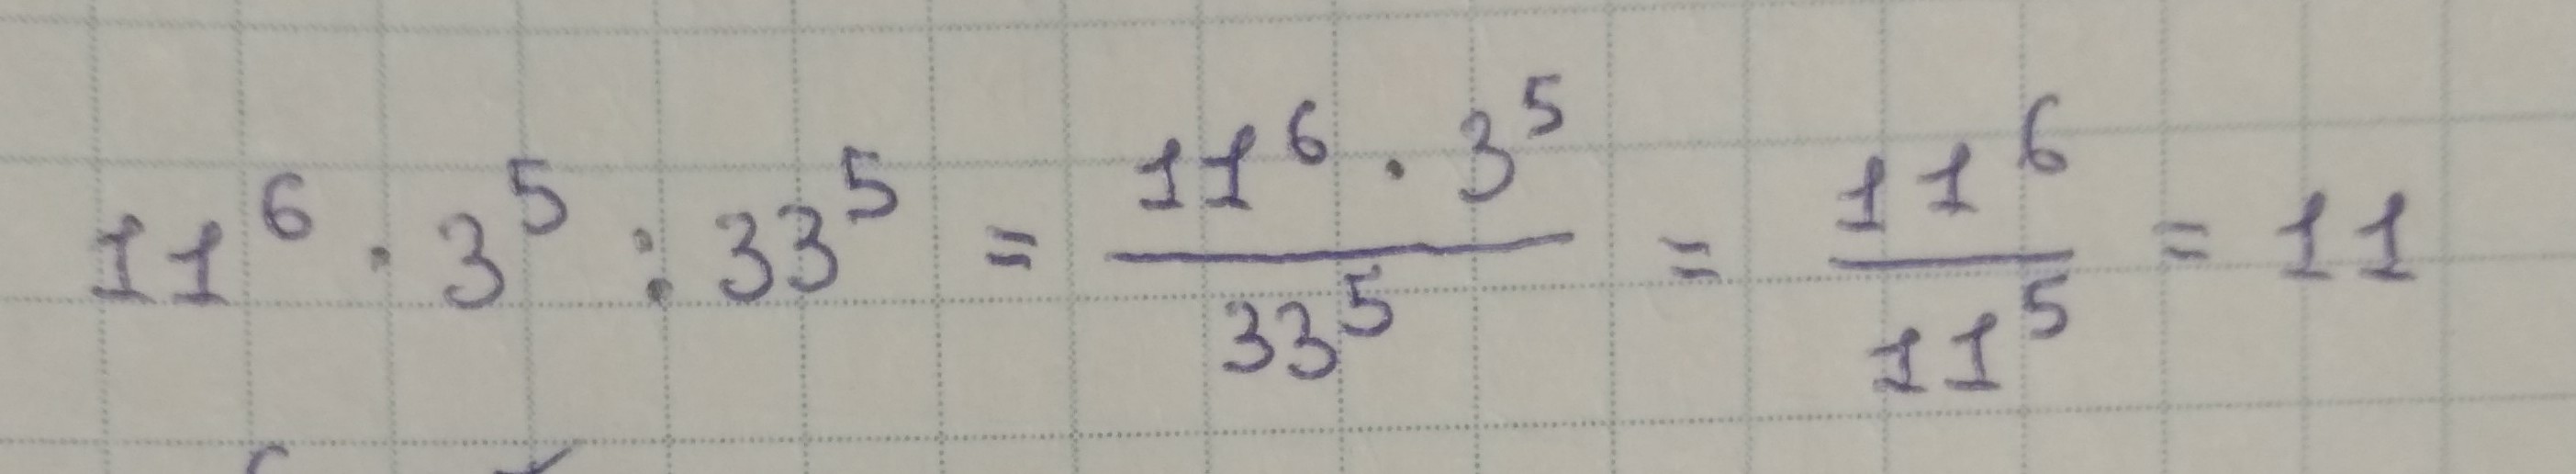 32 15 умножить на 5. 3 В 5 степени. 2 В степени 3 5 умножить на 3 в степени 5.5 разделить на 6 в степени 4.5.